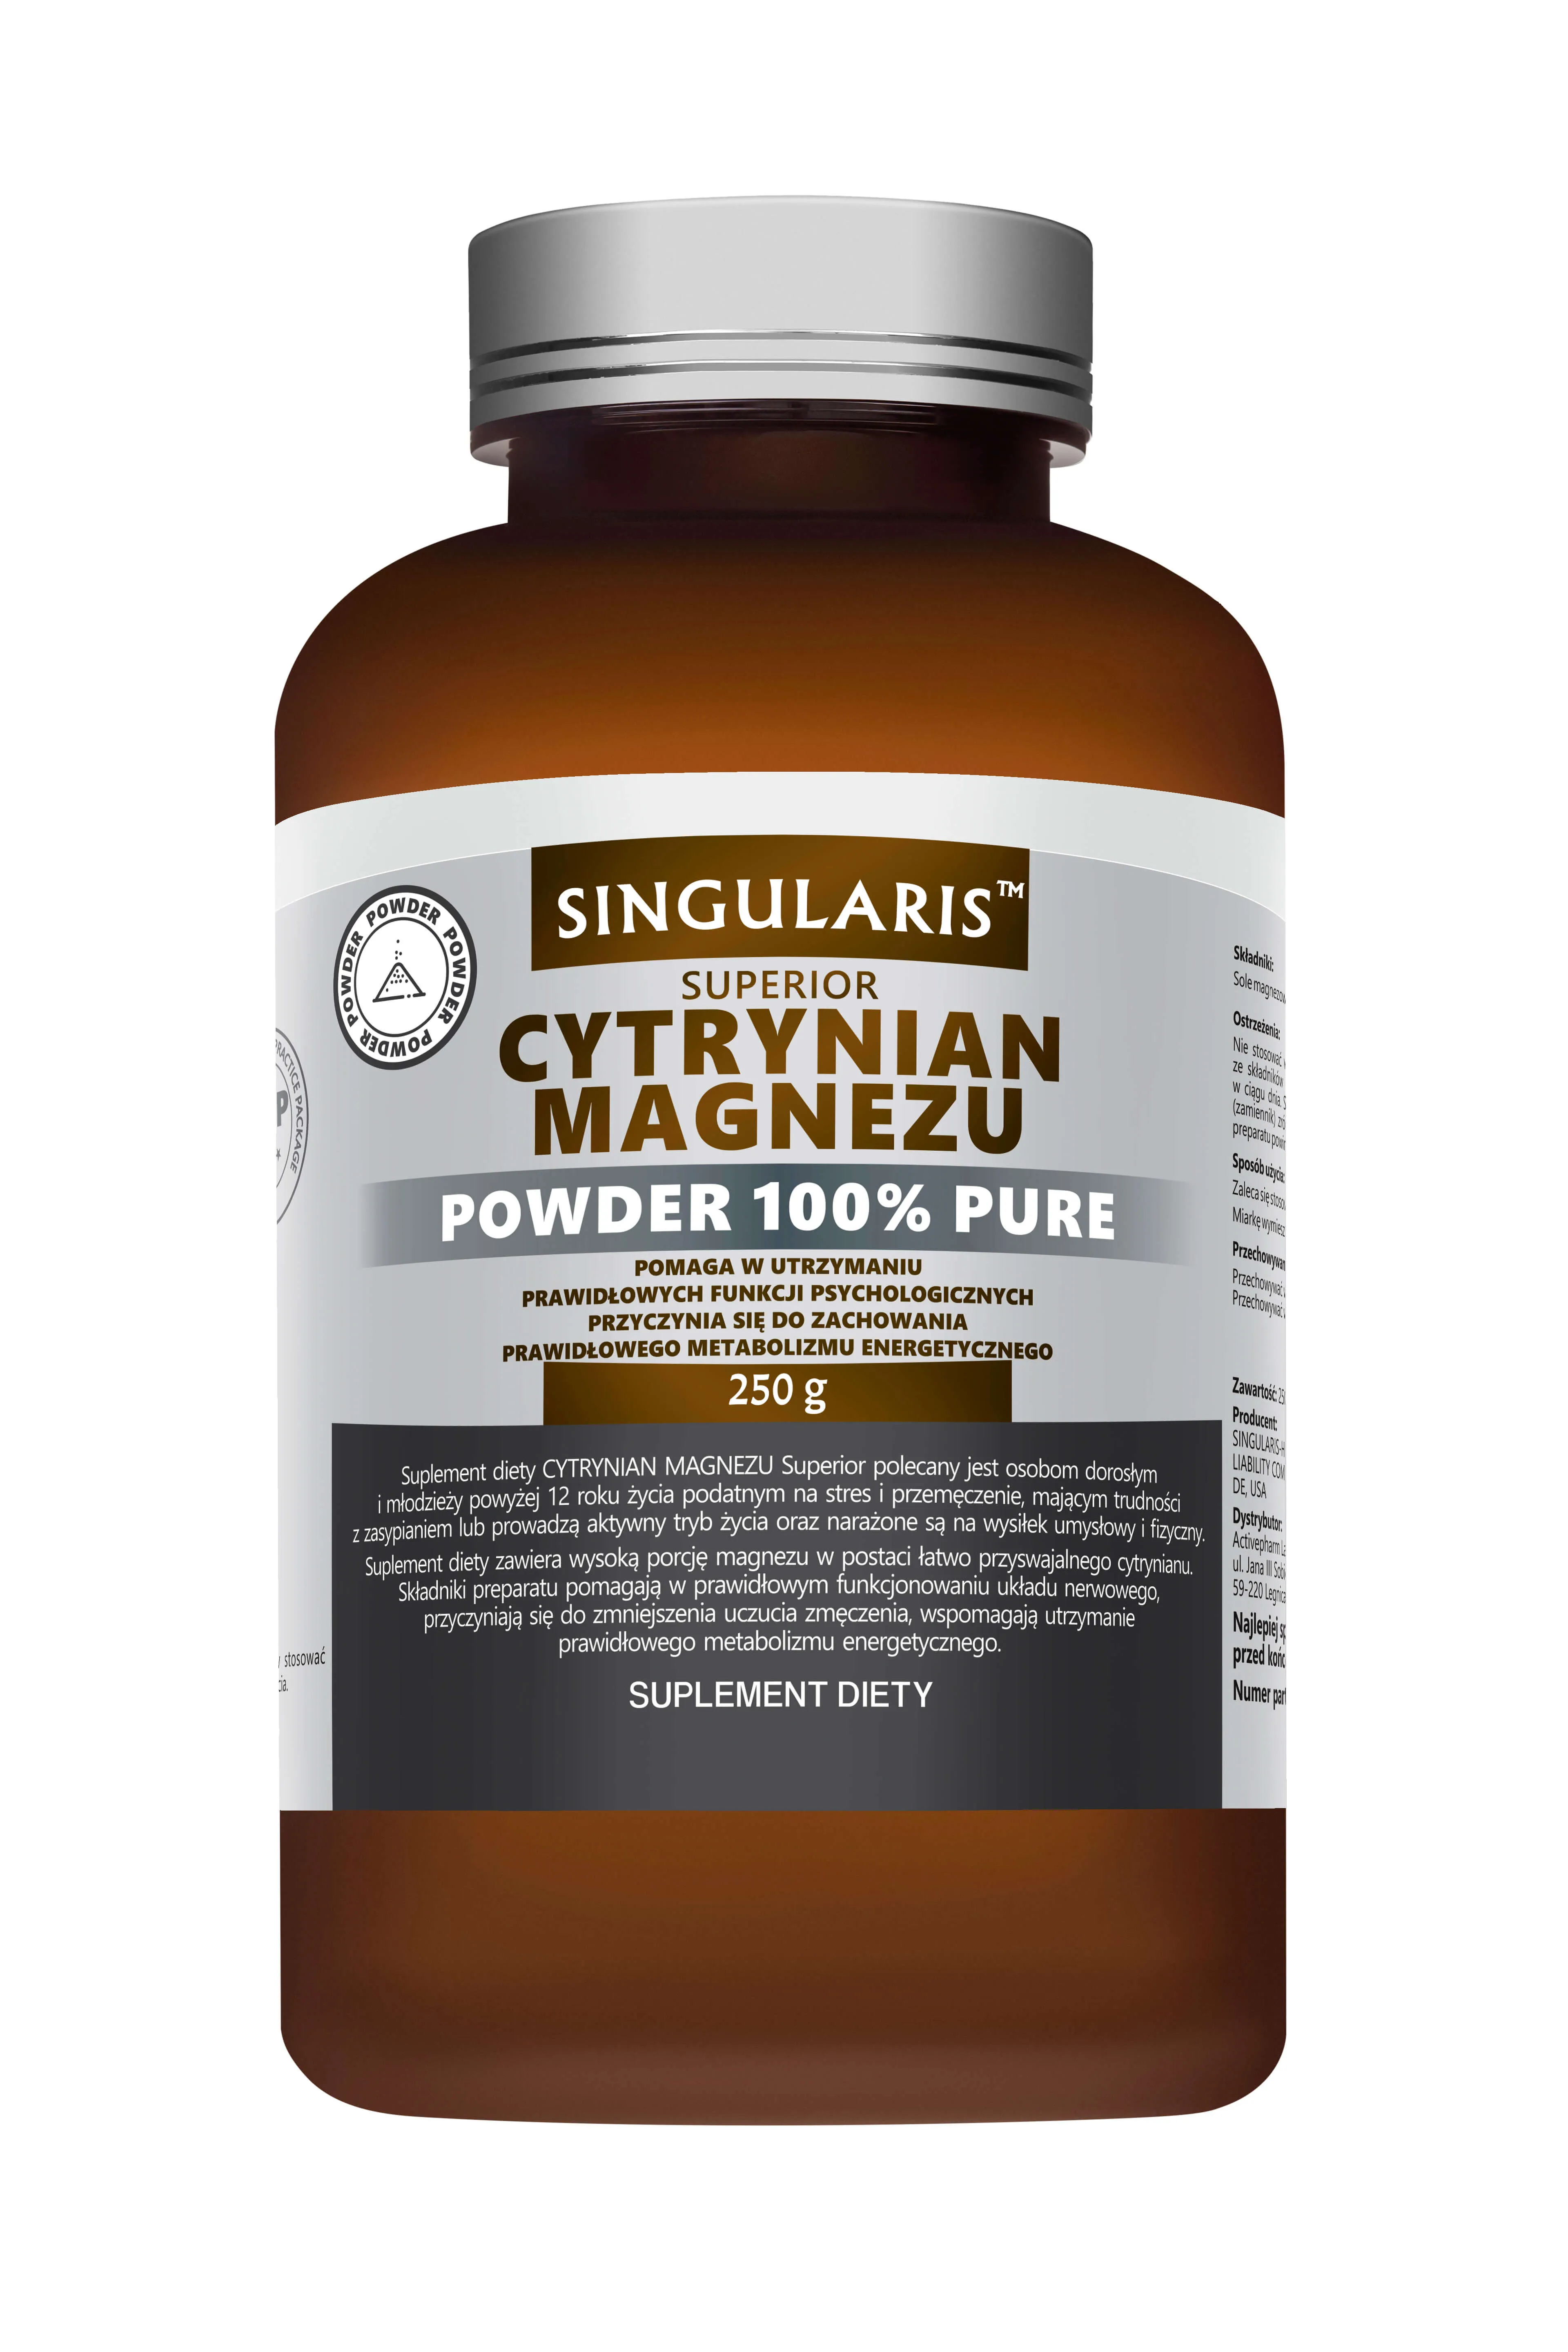 Singularis Superior Cytrynian Magnezu Powder 100% Pure, suplement diety, poroszek 250 g